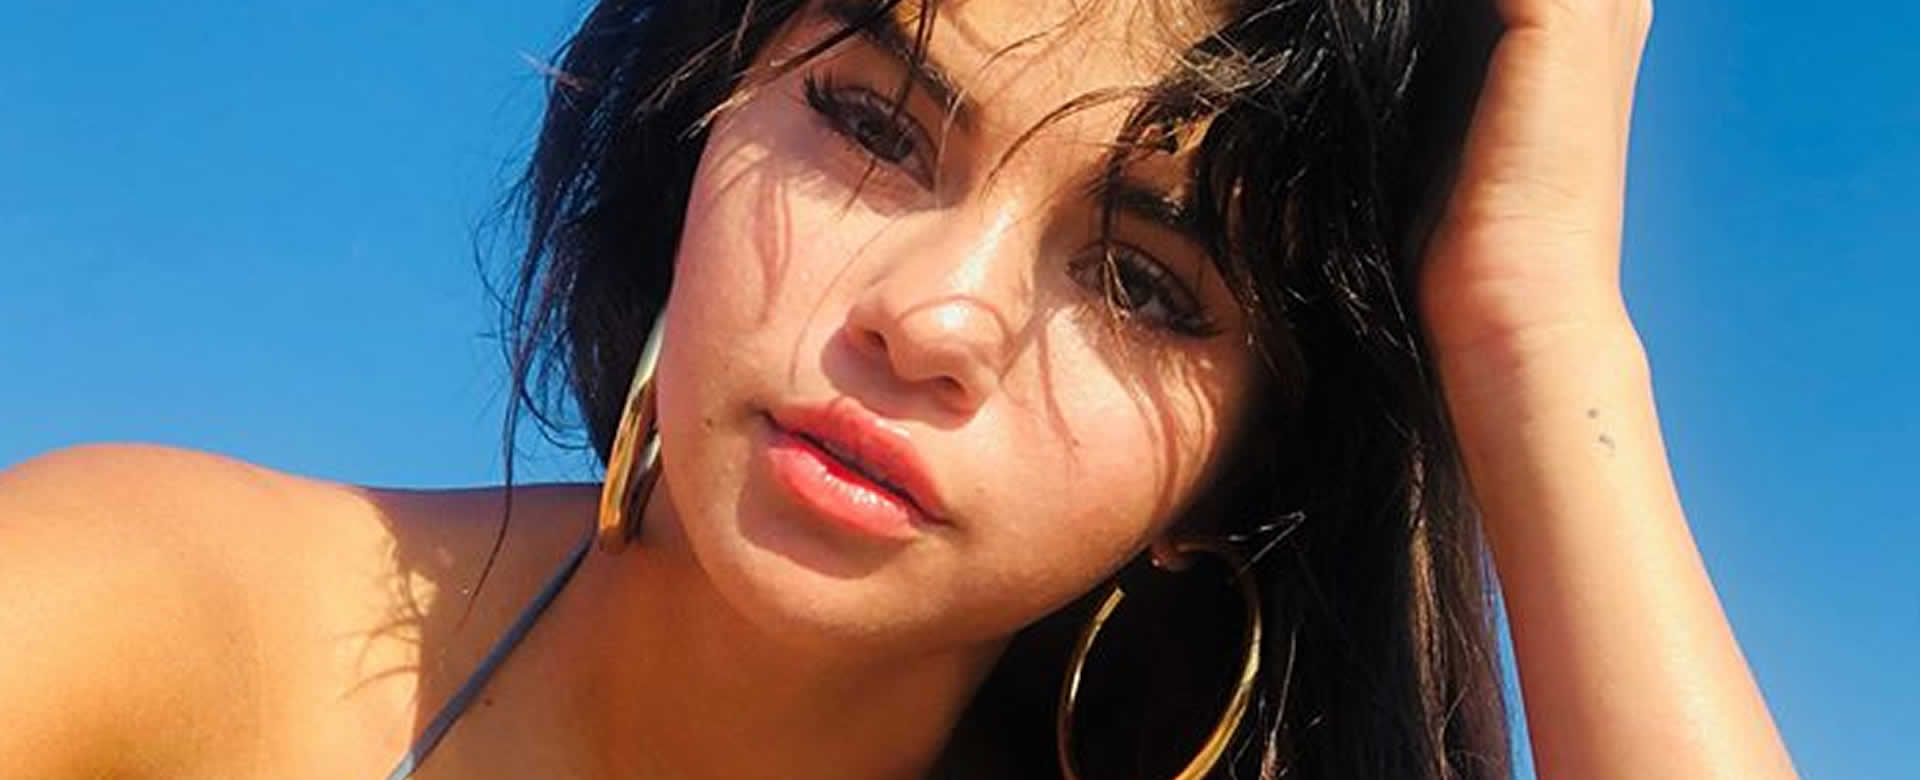 Selena Gómez es internada en un psiquiátrico tras sufrir crisis emocional de salud